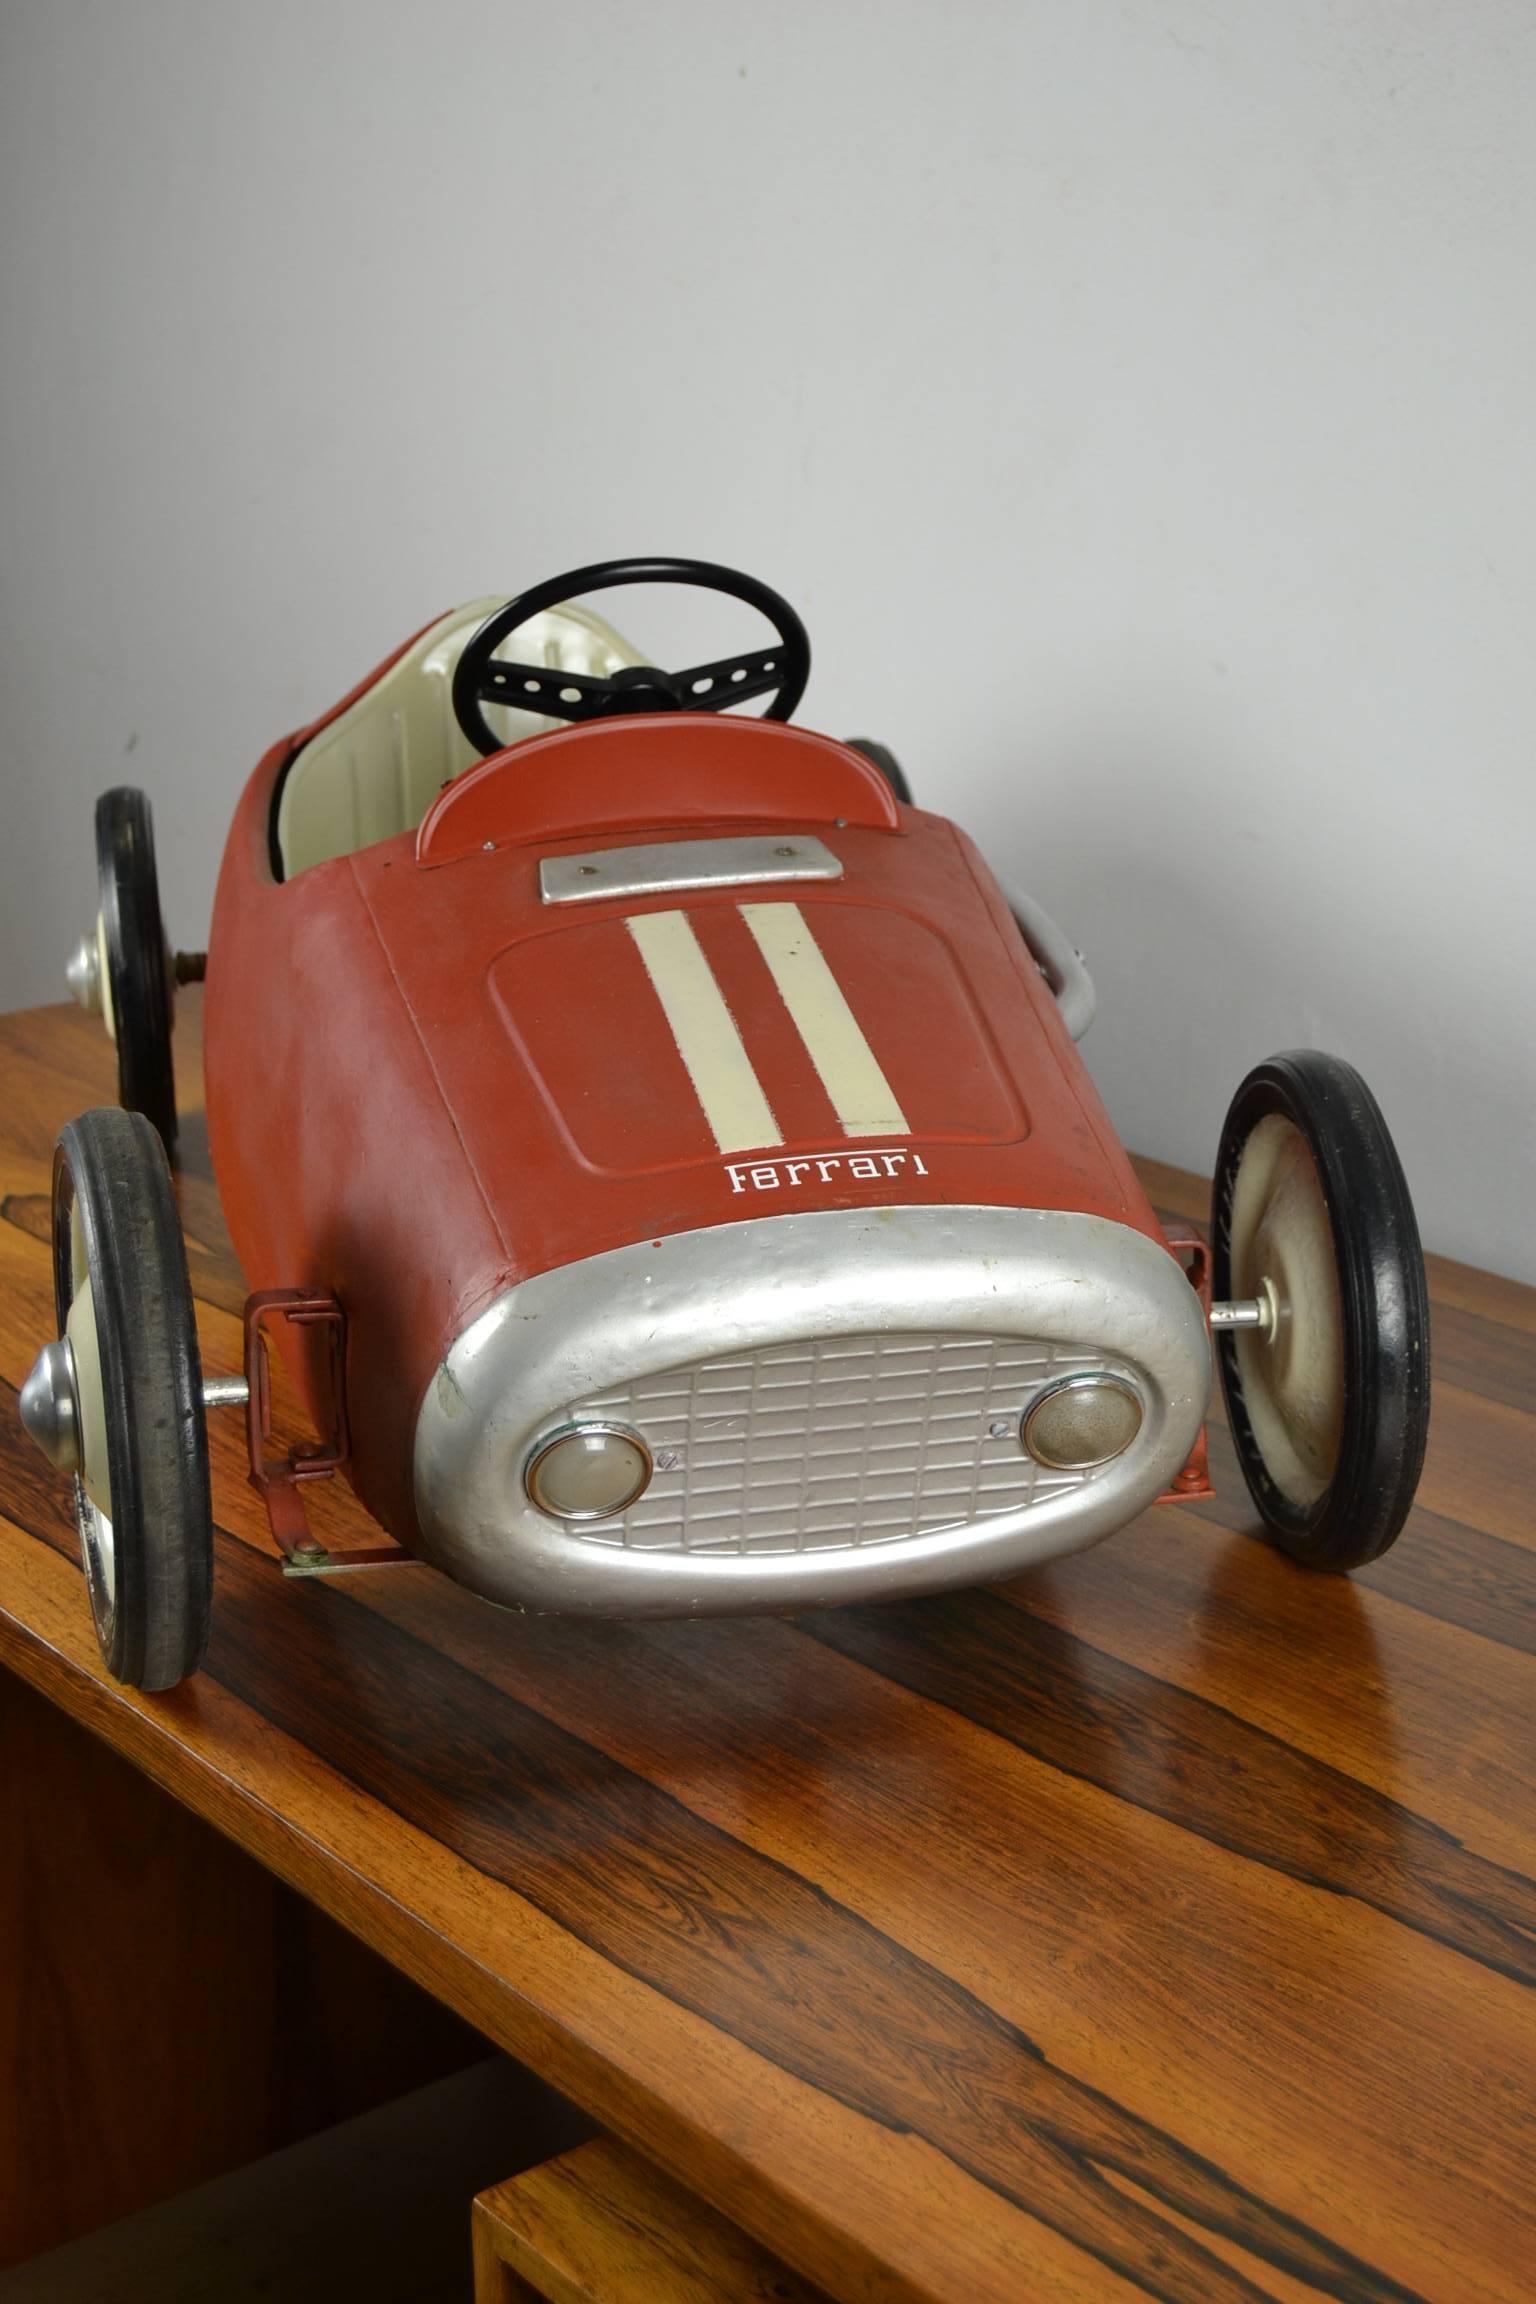 20th Century Vintage Pedal Car Ferrari Racer, Morellet et Guérineau, France, 1950s